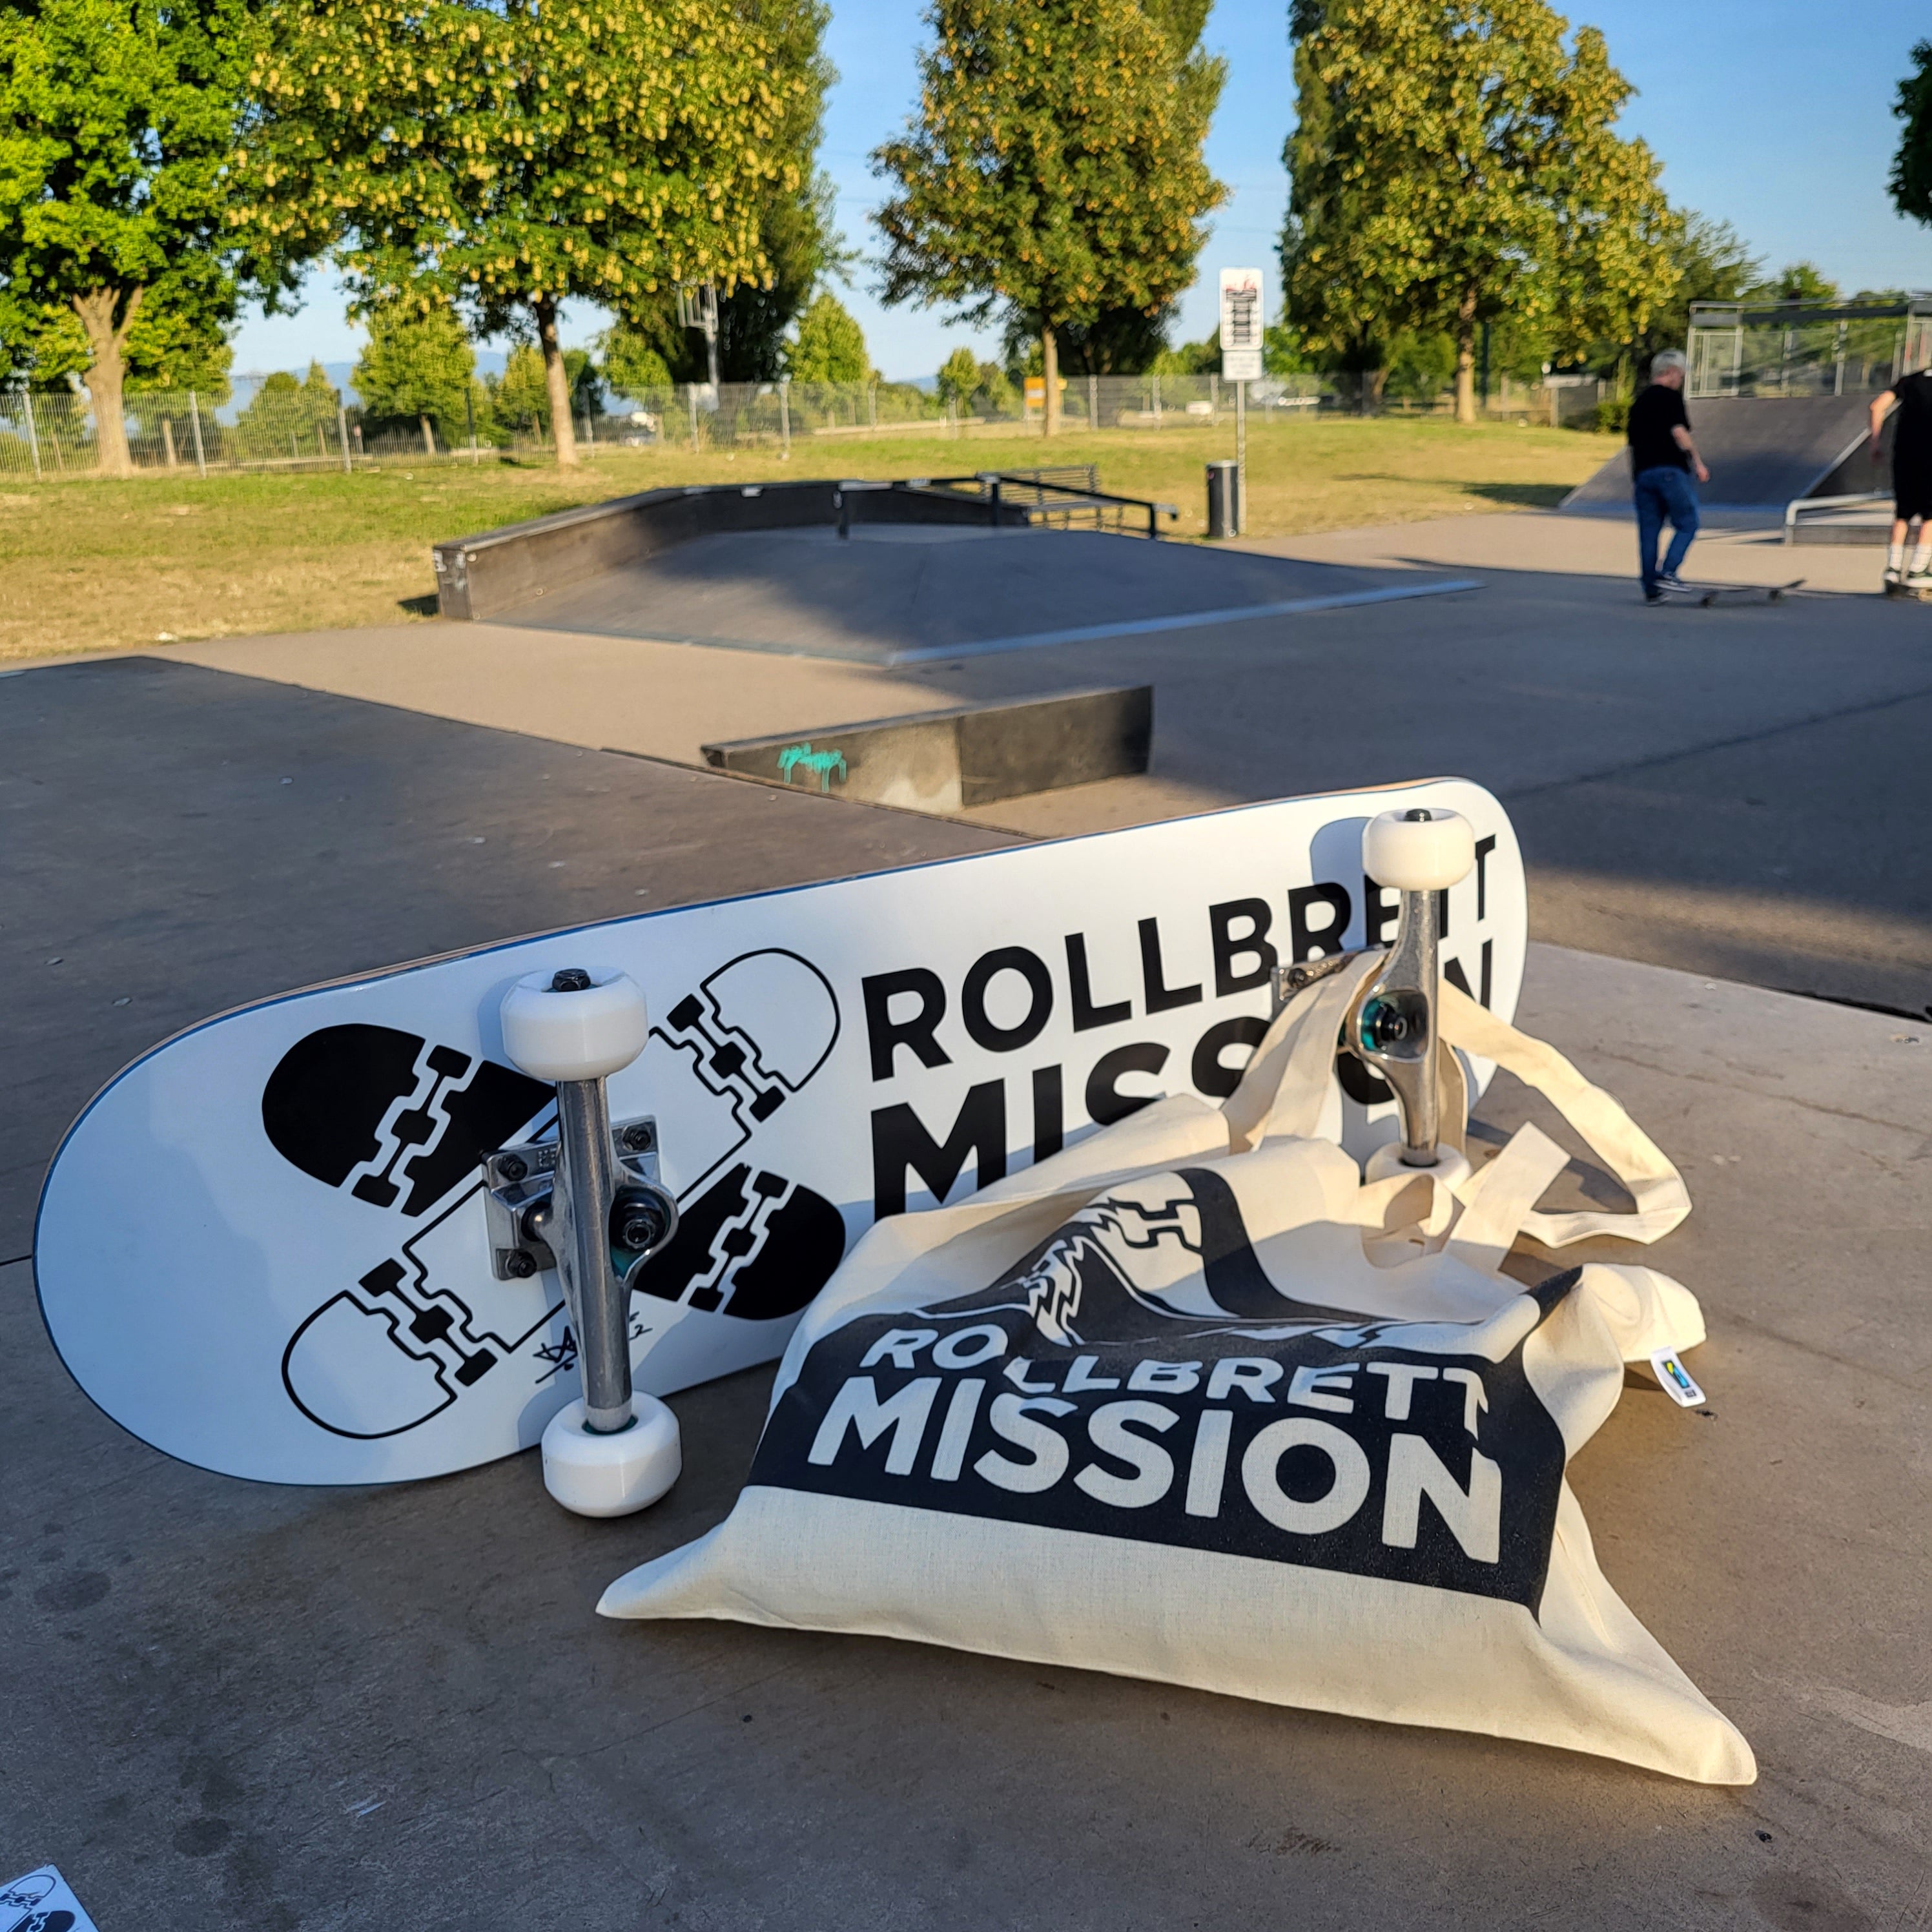 (c) Rollbrett-mission.de